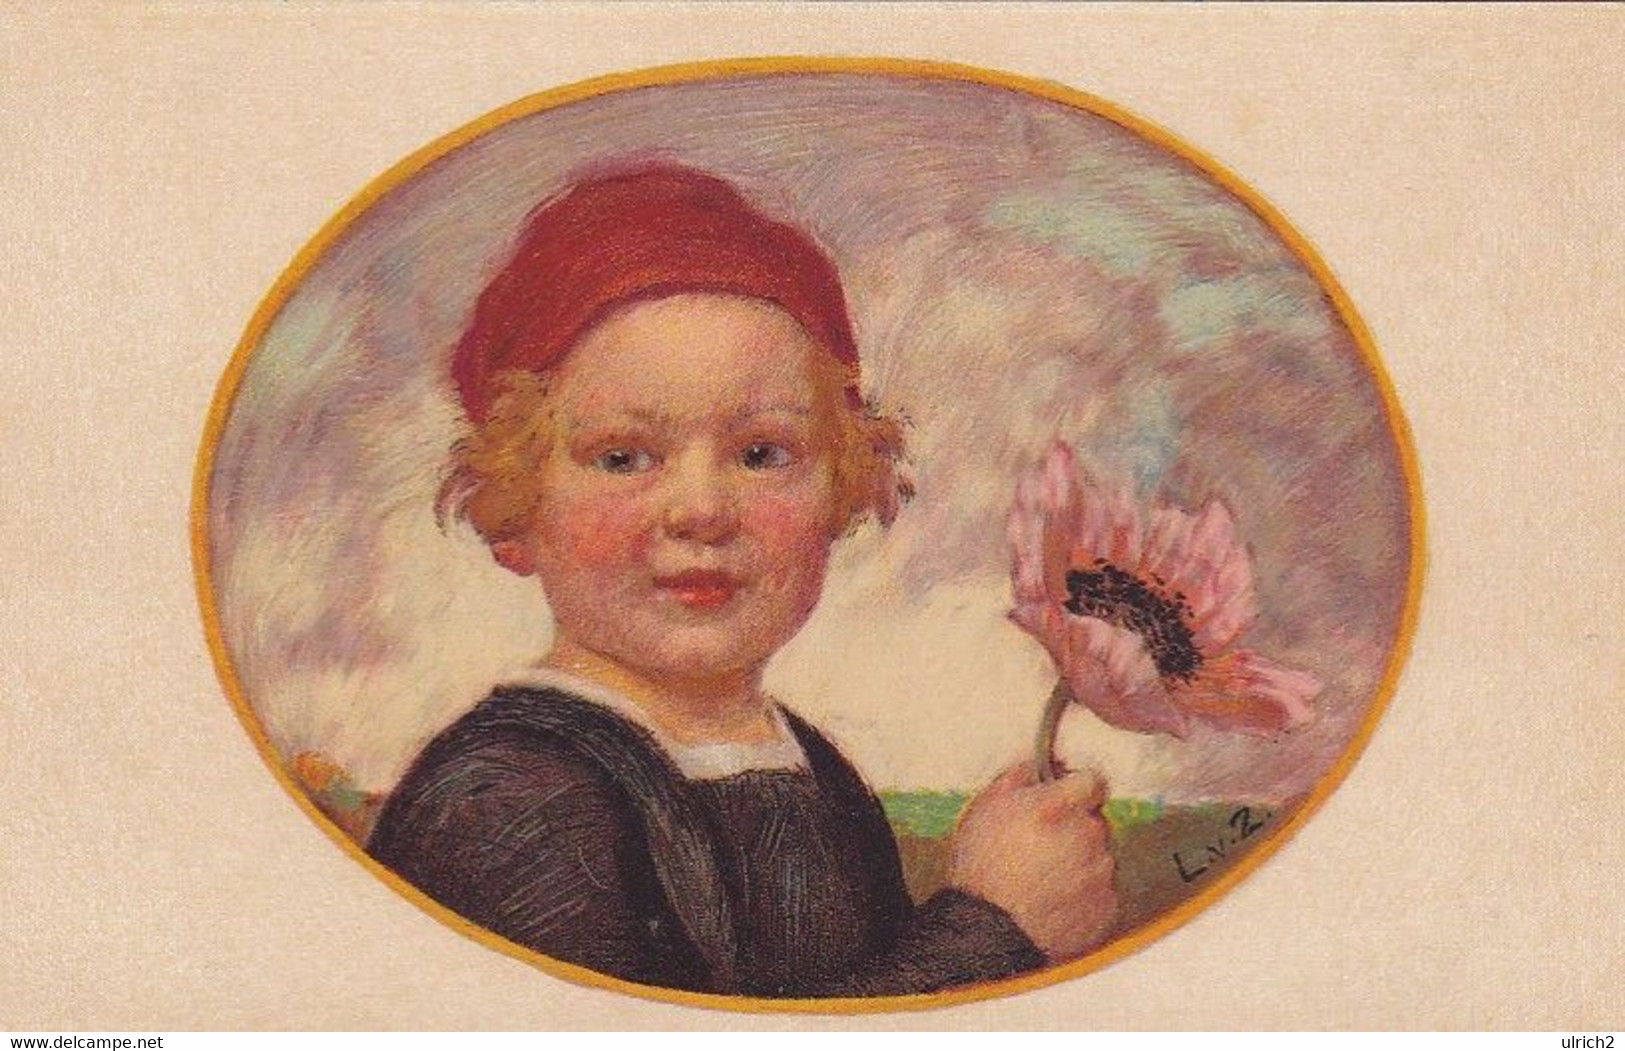 AK Künstlerkarte Zumbusch - Bayerischer Blumentag 1913 - Kind Mit Blume (55983) - Zumbusch, Ludwig V.